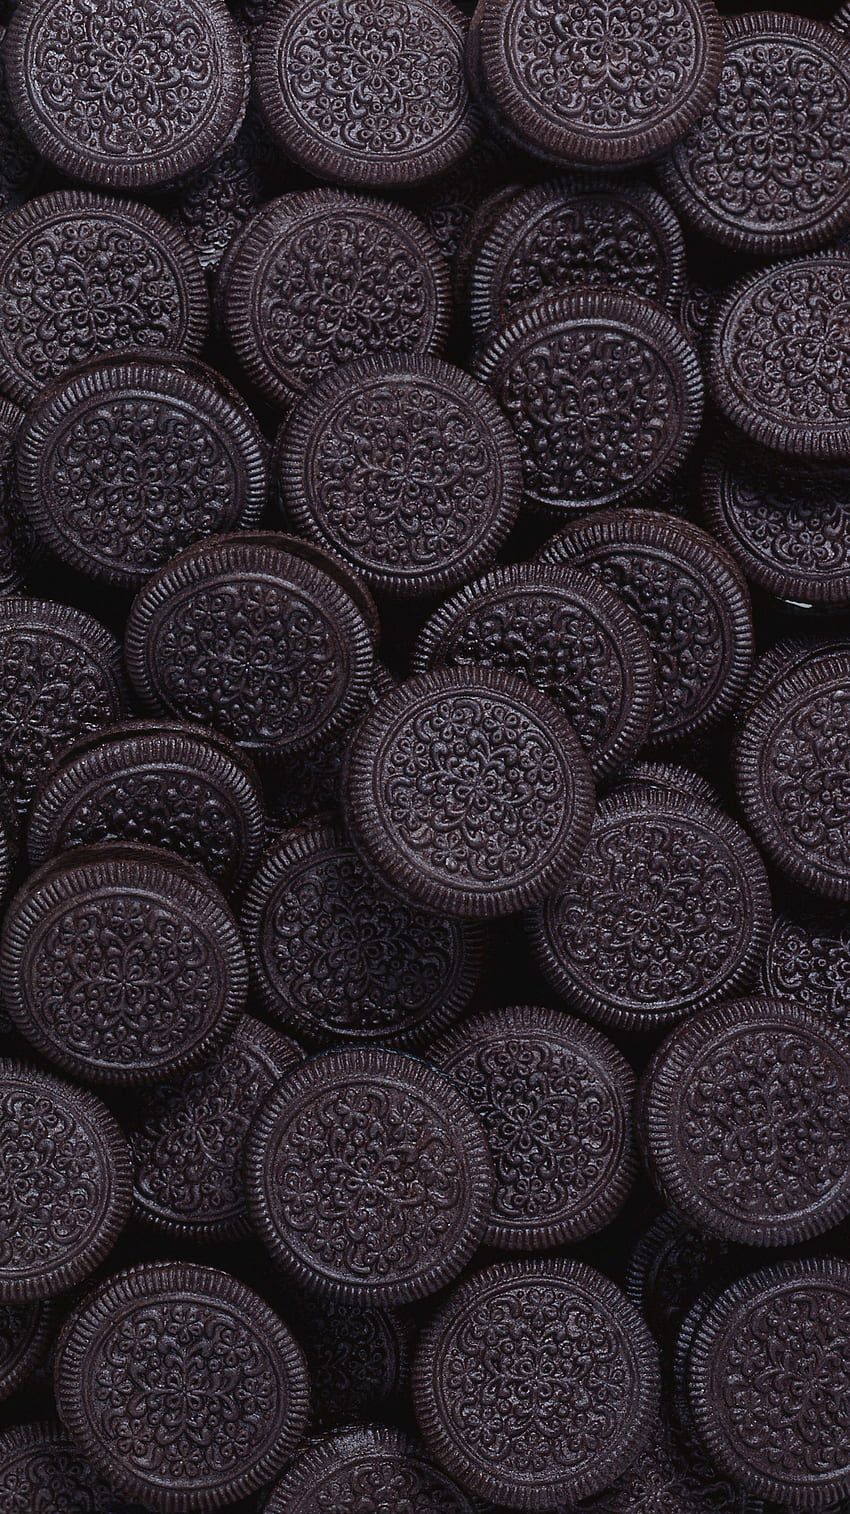 A close up of chocolate covered oreos - Oreo